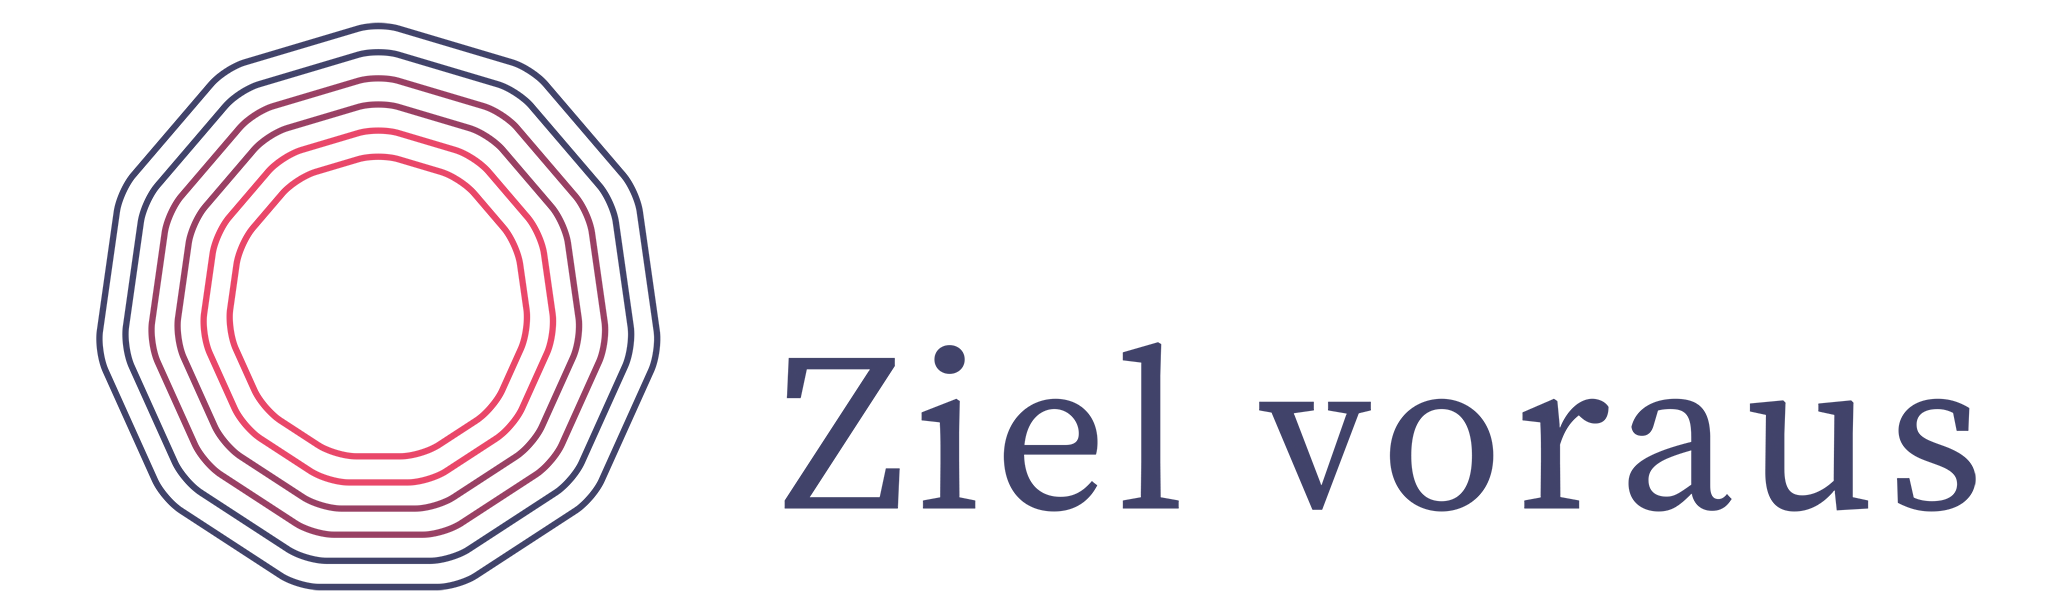 Ziel voraus Steuerberater Lübeck - Steuerberatung für Unternehmen - Logo